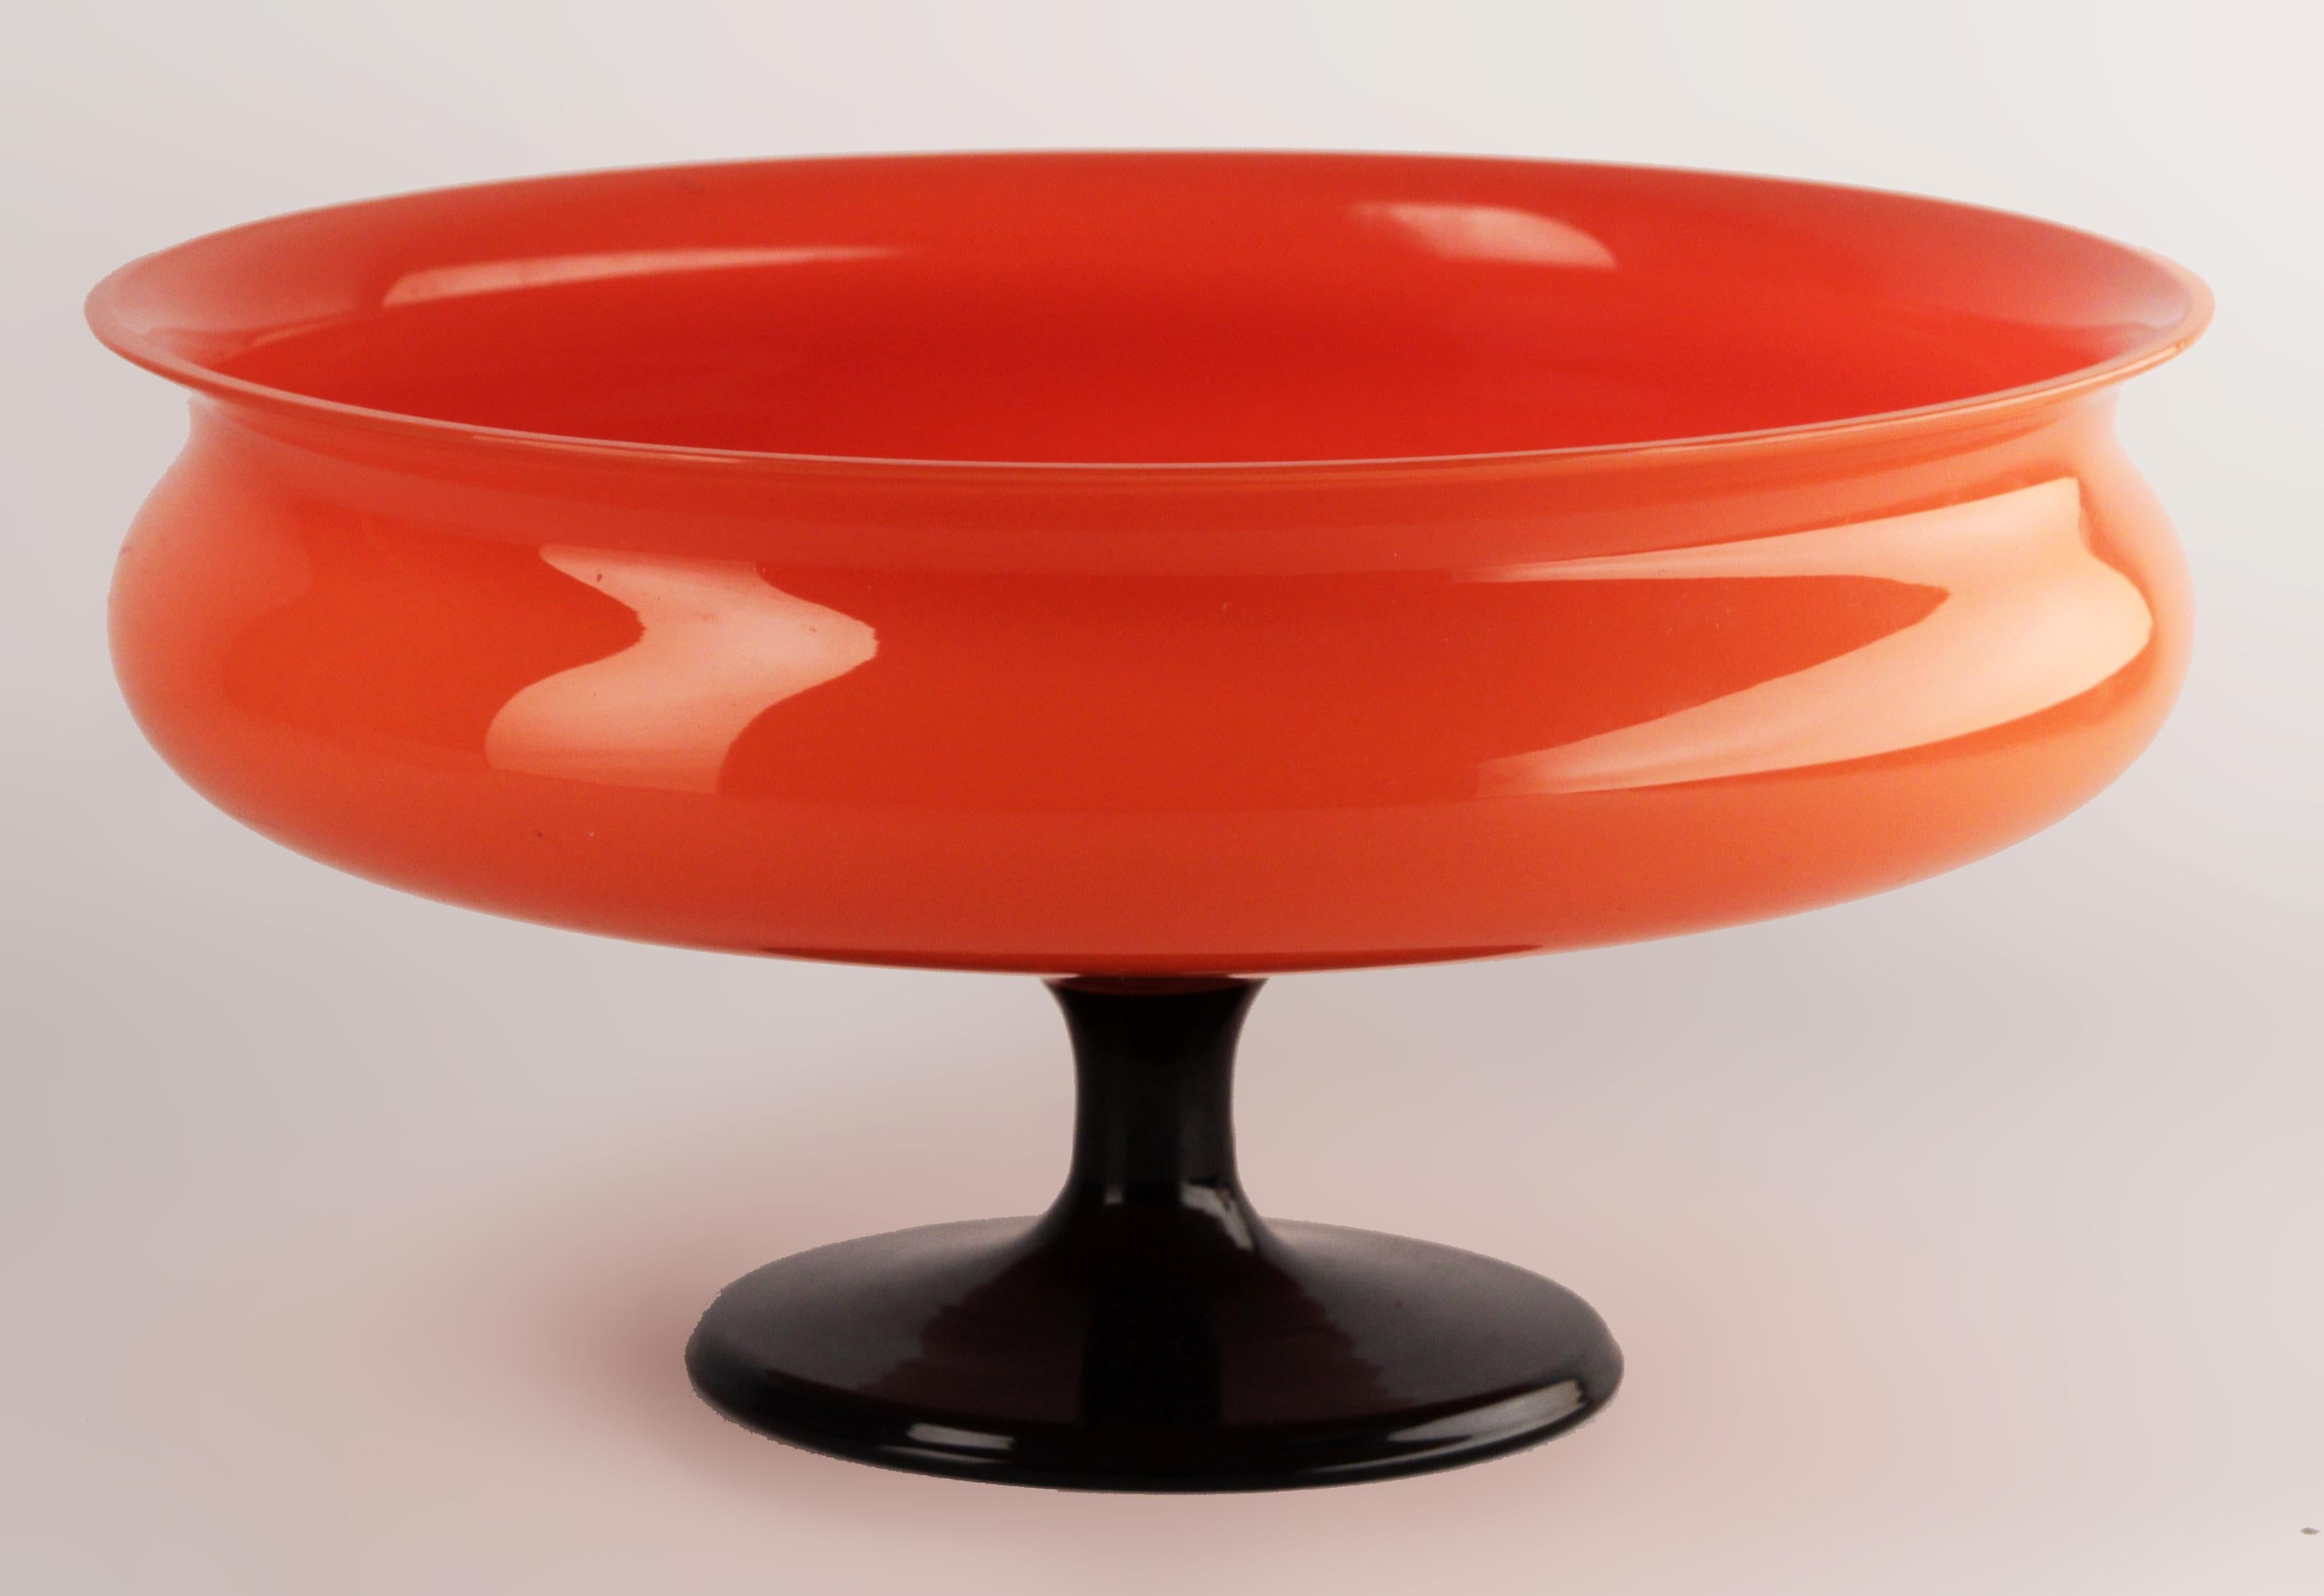 Anfang des 20. Jahrhunderts tschechisches glasiertes Kunstglas Tango Powolny-ähnliche rote Schale mit Fuß

von: Michael Powolny (in Anlehnung an)
MATERIAL: Glas, Kunstglas
Technik: gegossen, poliert, glasiert, geformt
Abmessungen: 10 in x 5